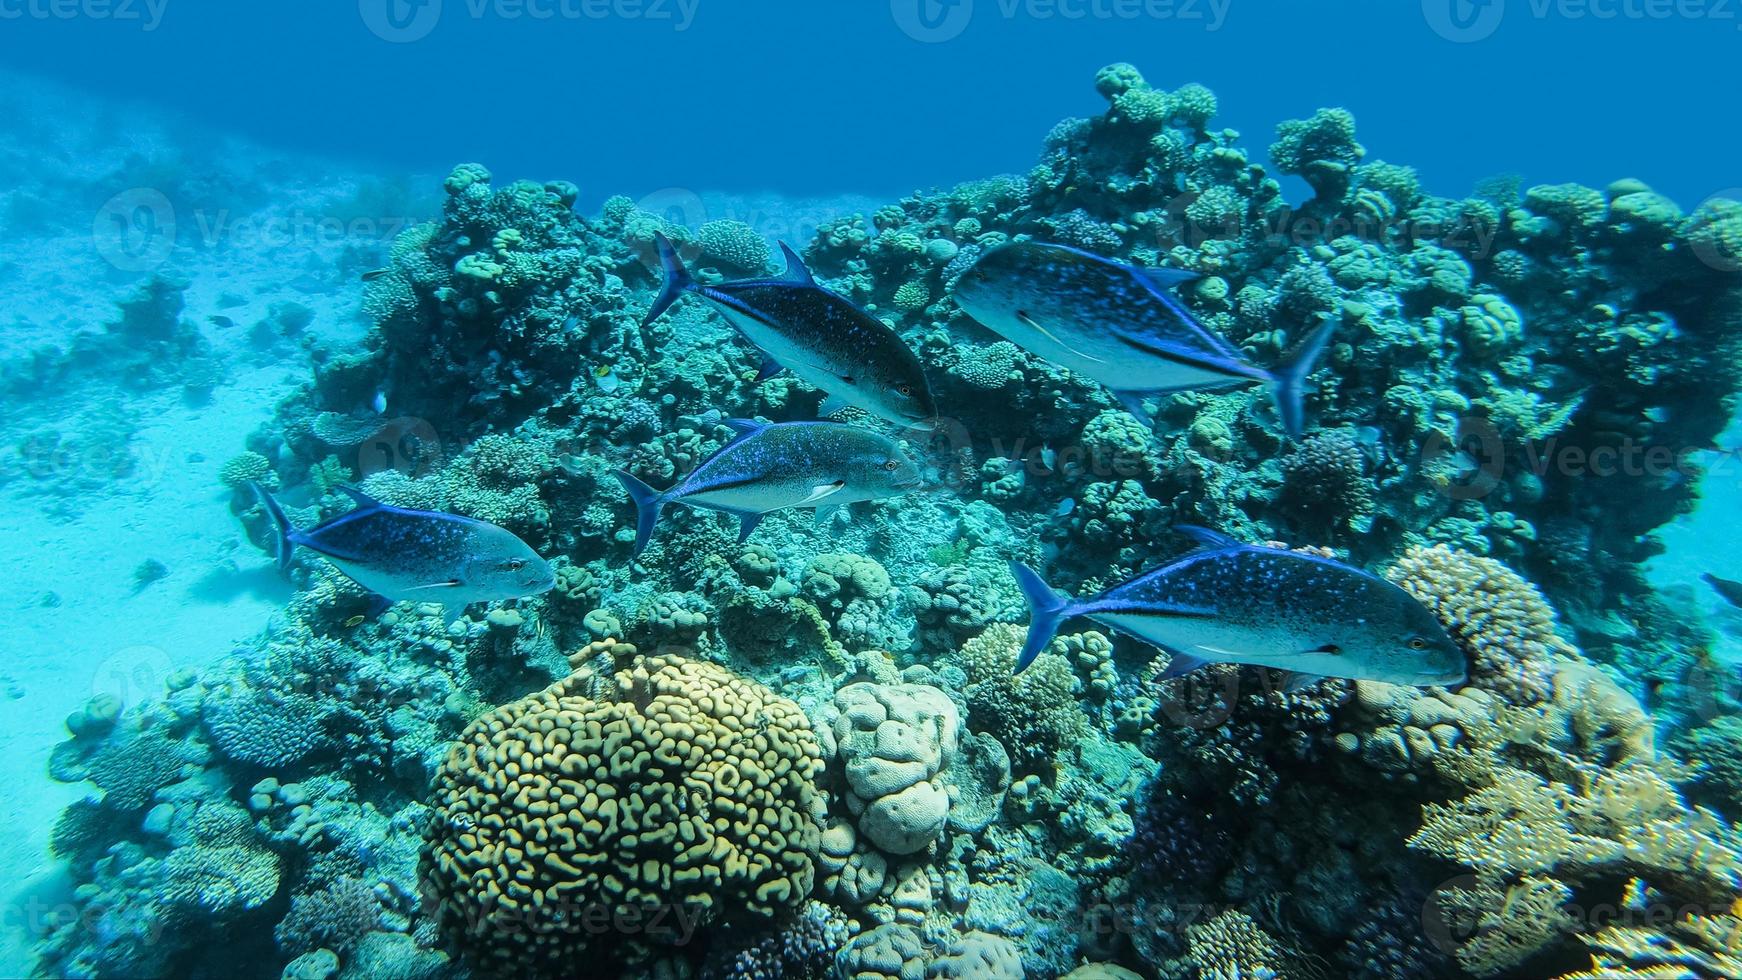 carangue rouge, caranx melampygus, un groupe de poissons prédateurs chassés sur un récif de corail dans la mer rouge. photo